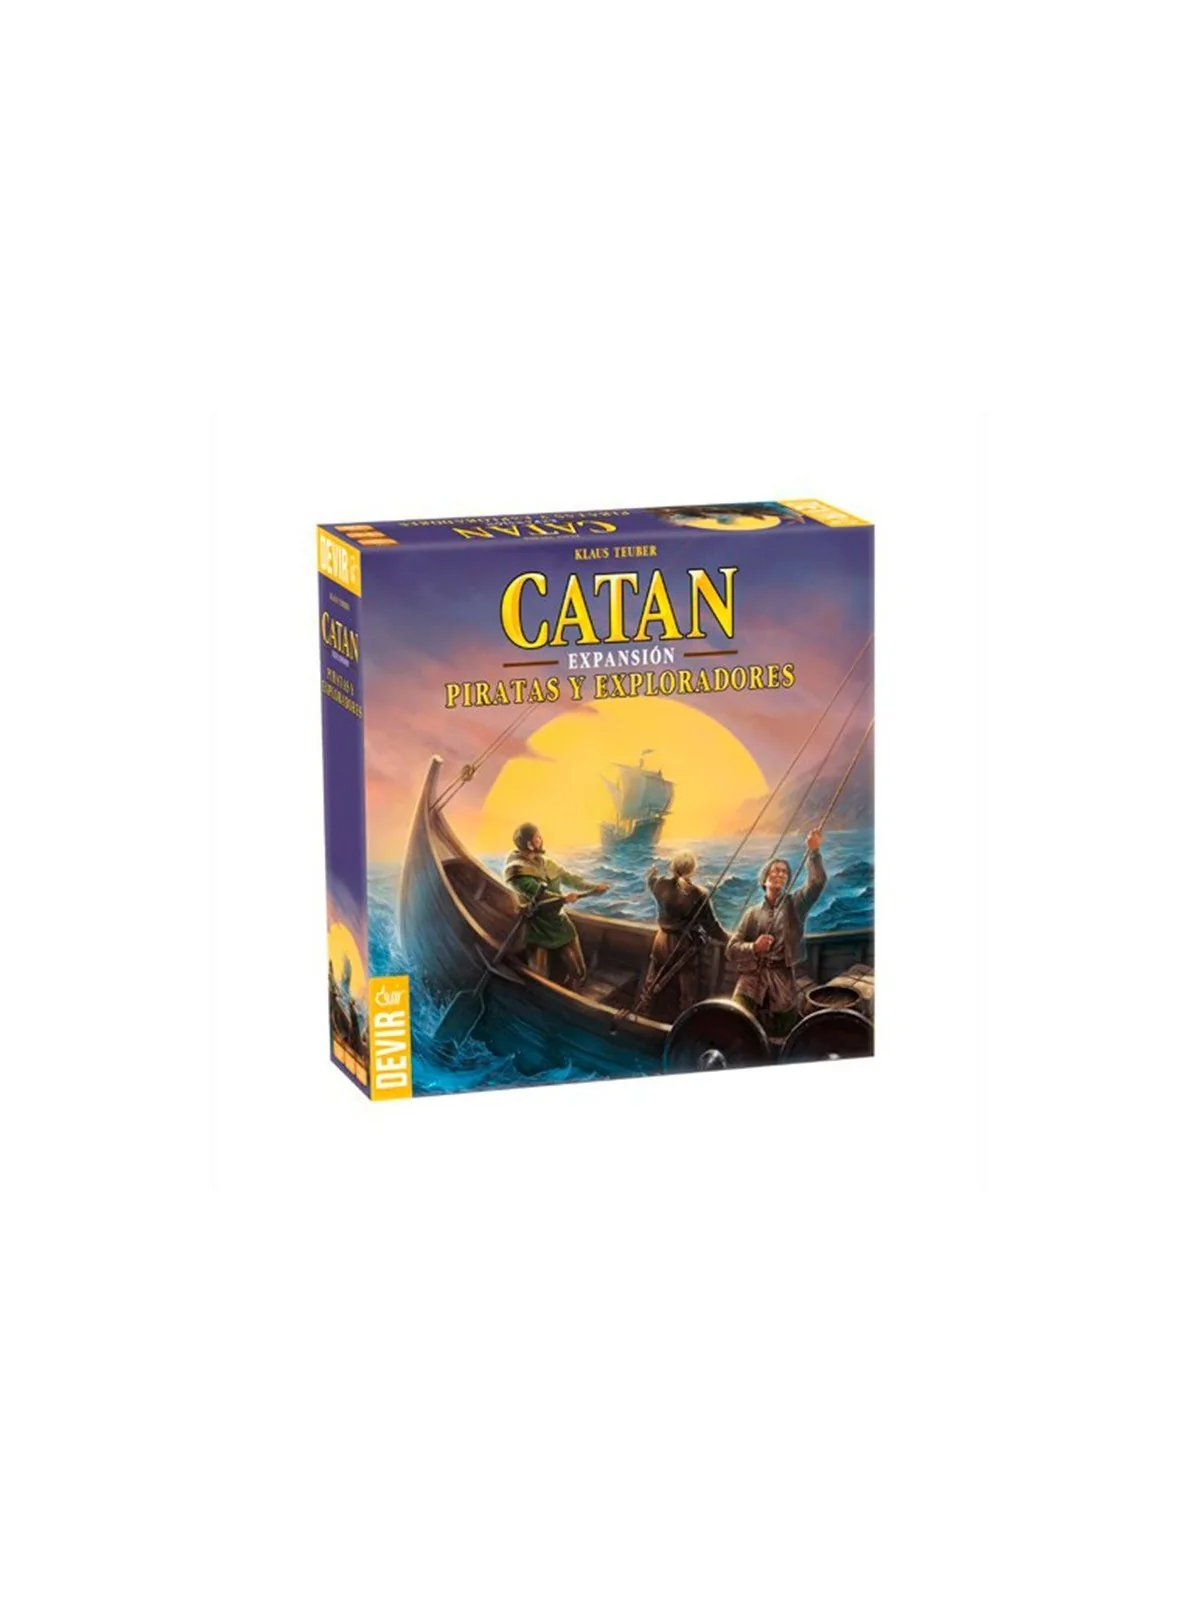 Comprar Catan: Piratas y Exploradores barato al mejor precio 44,09 € d